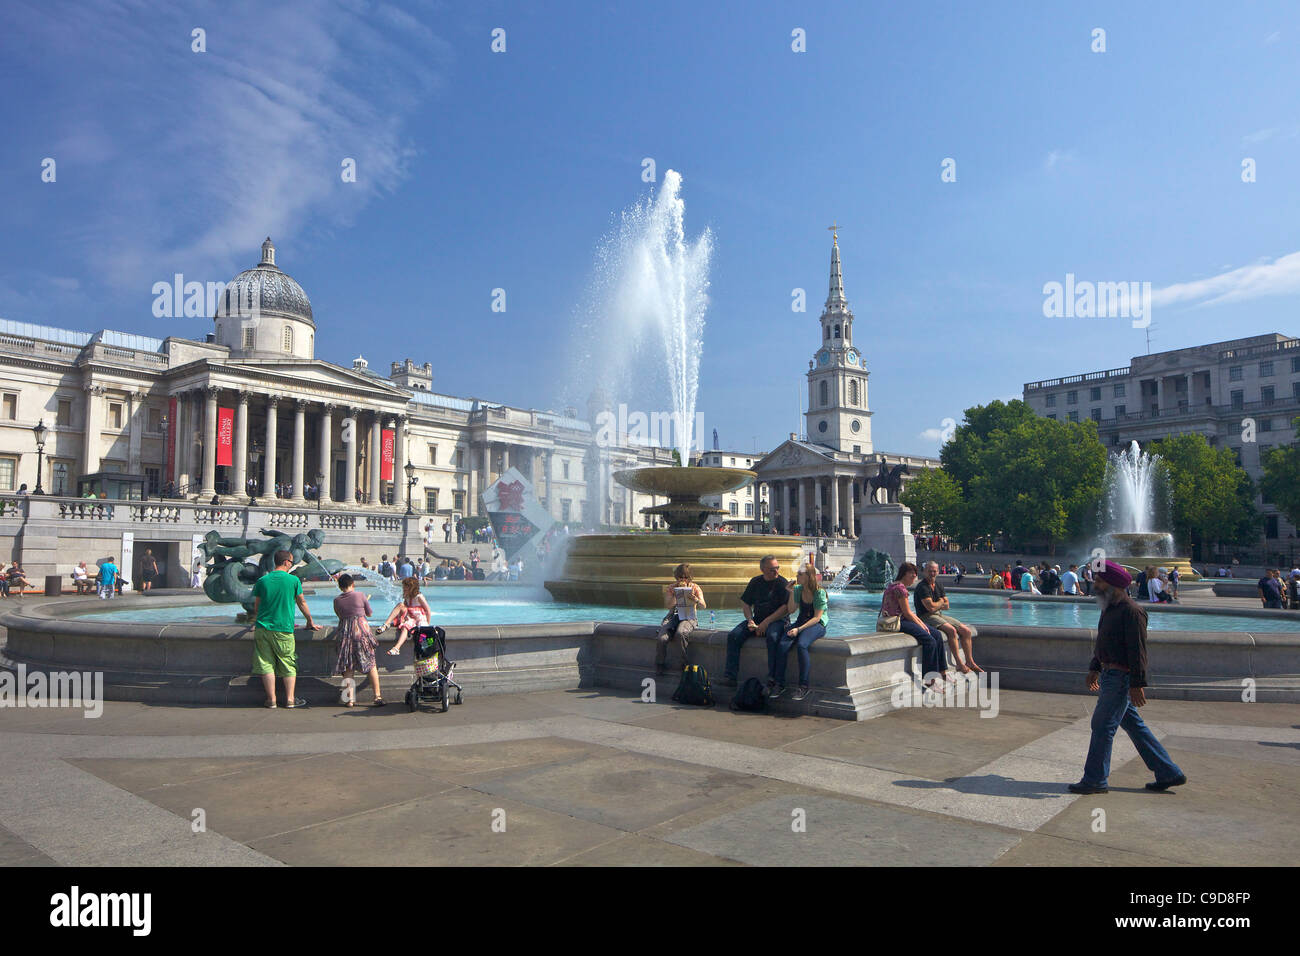 Springbrunnen, National Gallery und St. Martins-in-the-Fields-Kirche auf dem Trafalgar Square, Sommer Sonne, London, England, Vereinigtes Königreich, Einheit Stockfoto